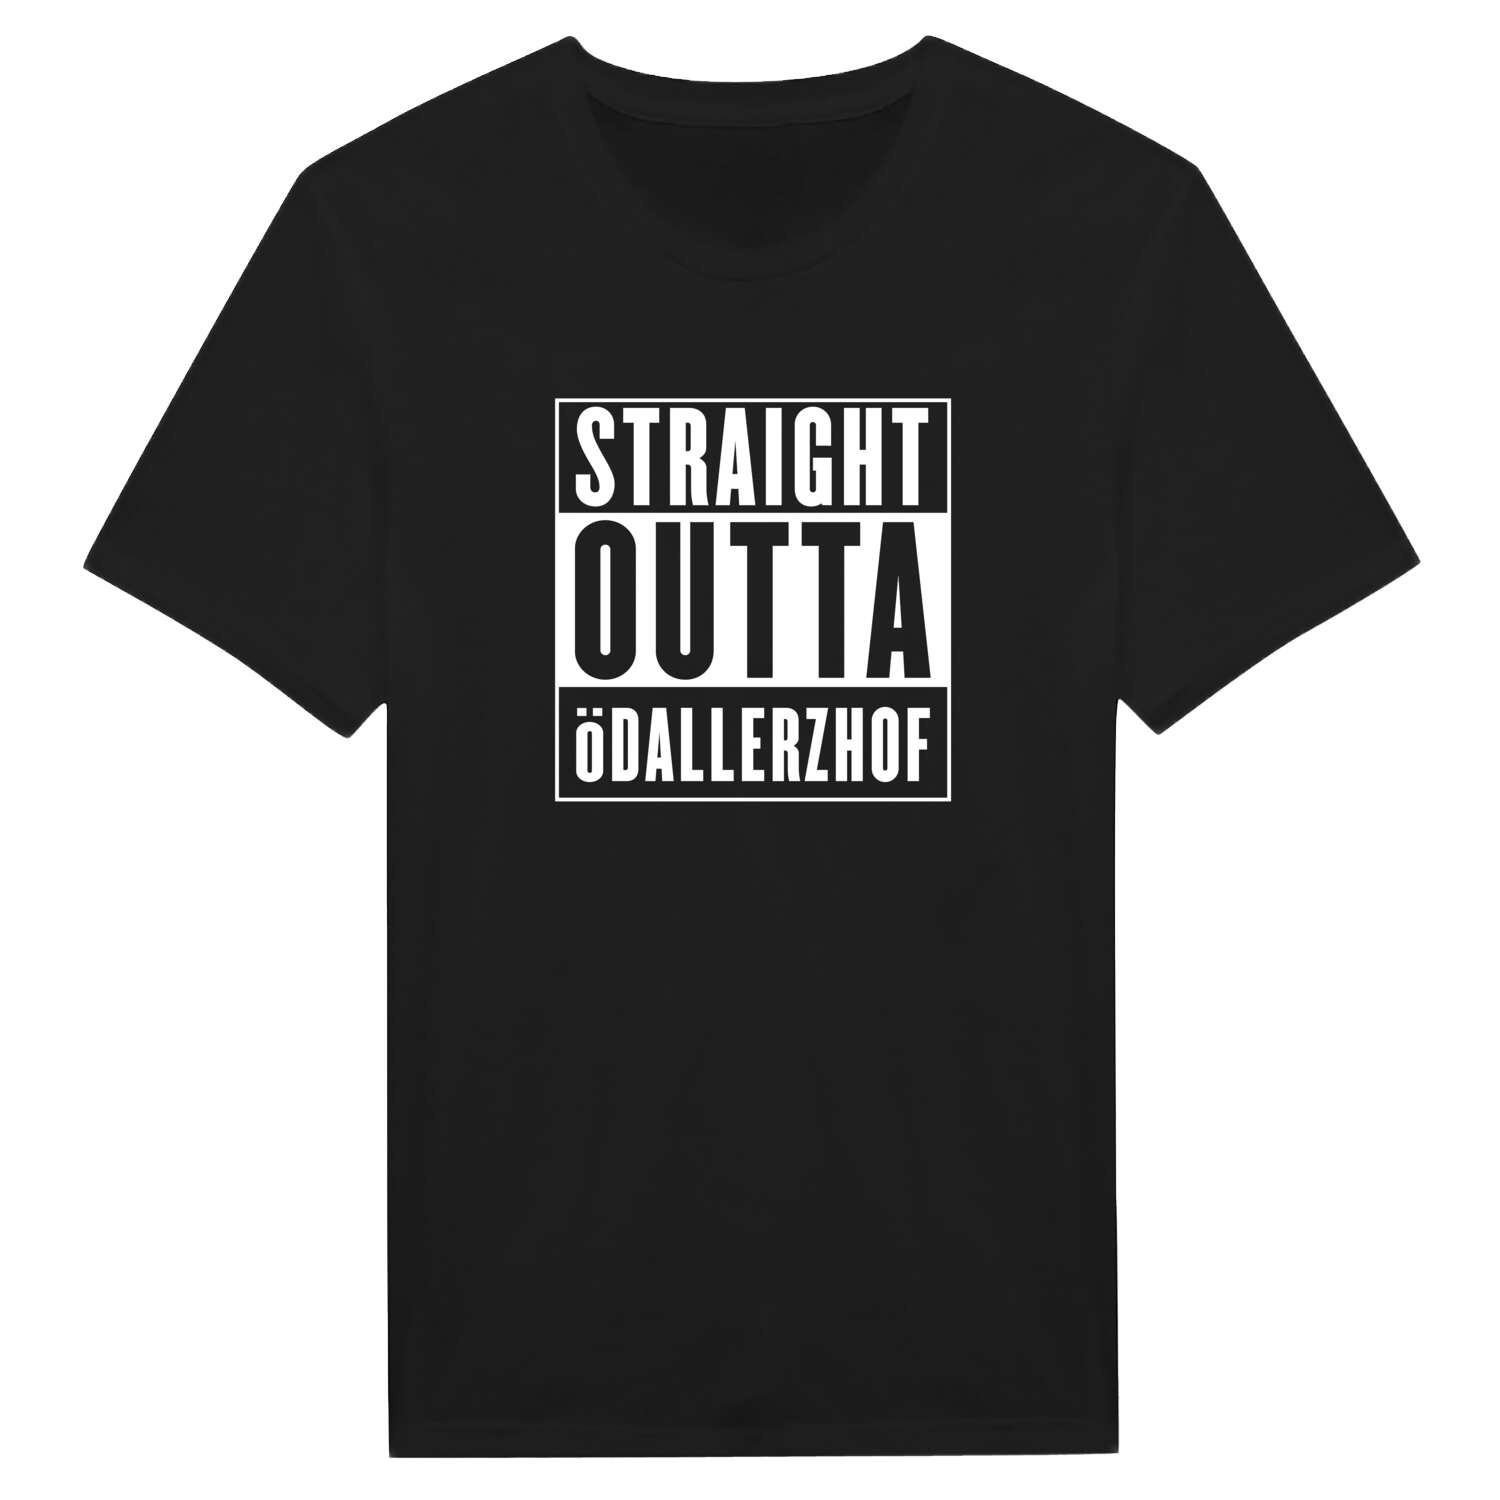 Ödallerzhof T-Shirt »Straight Outta«